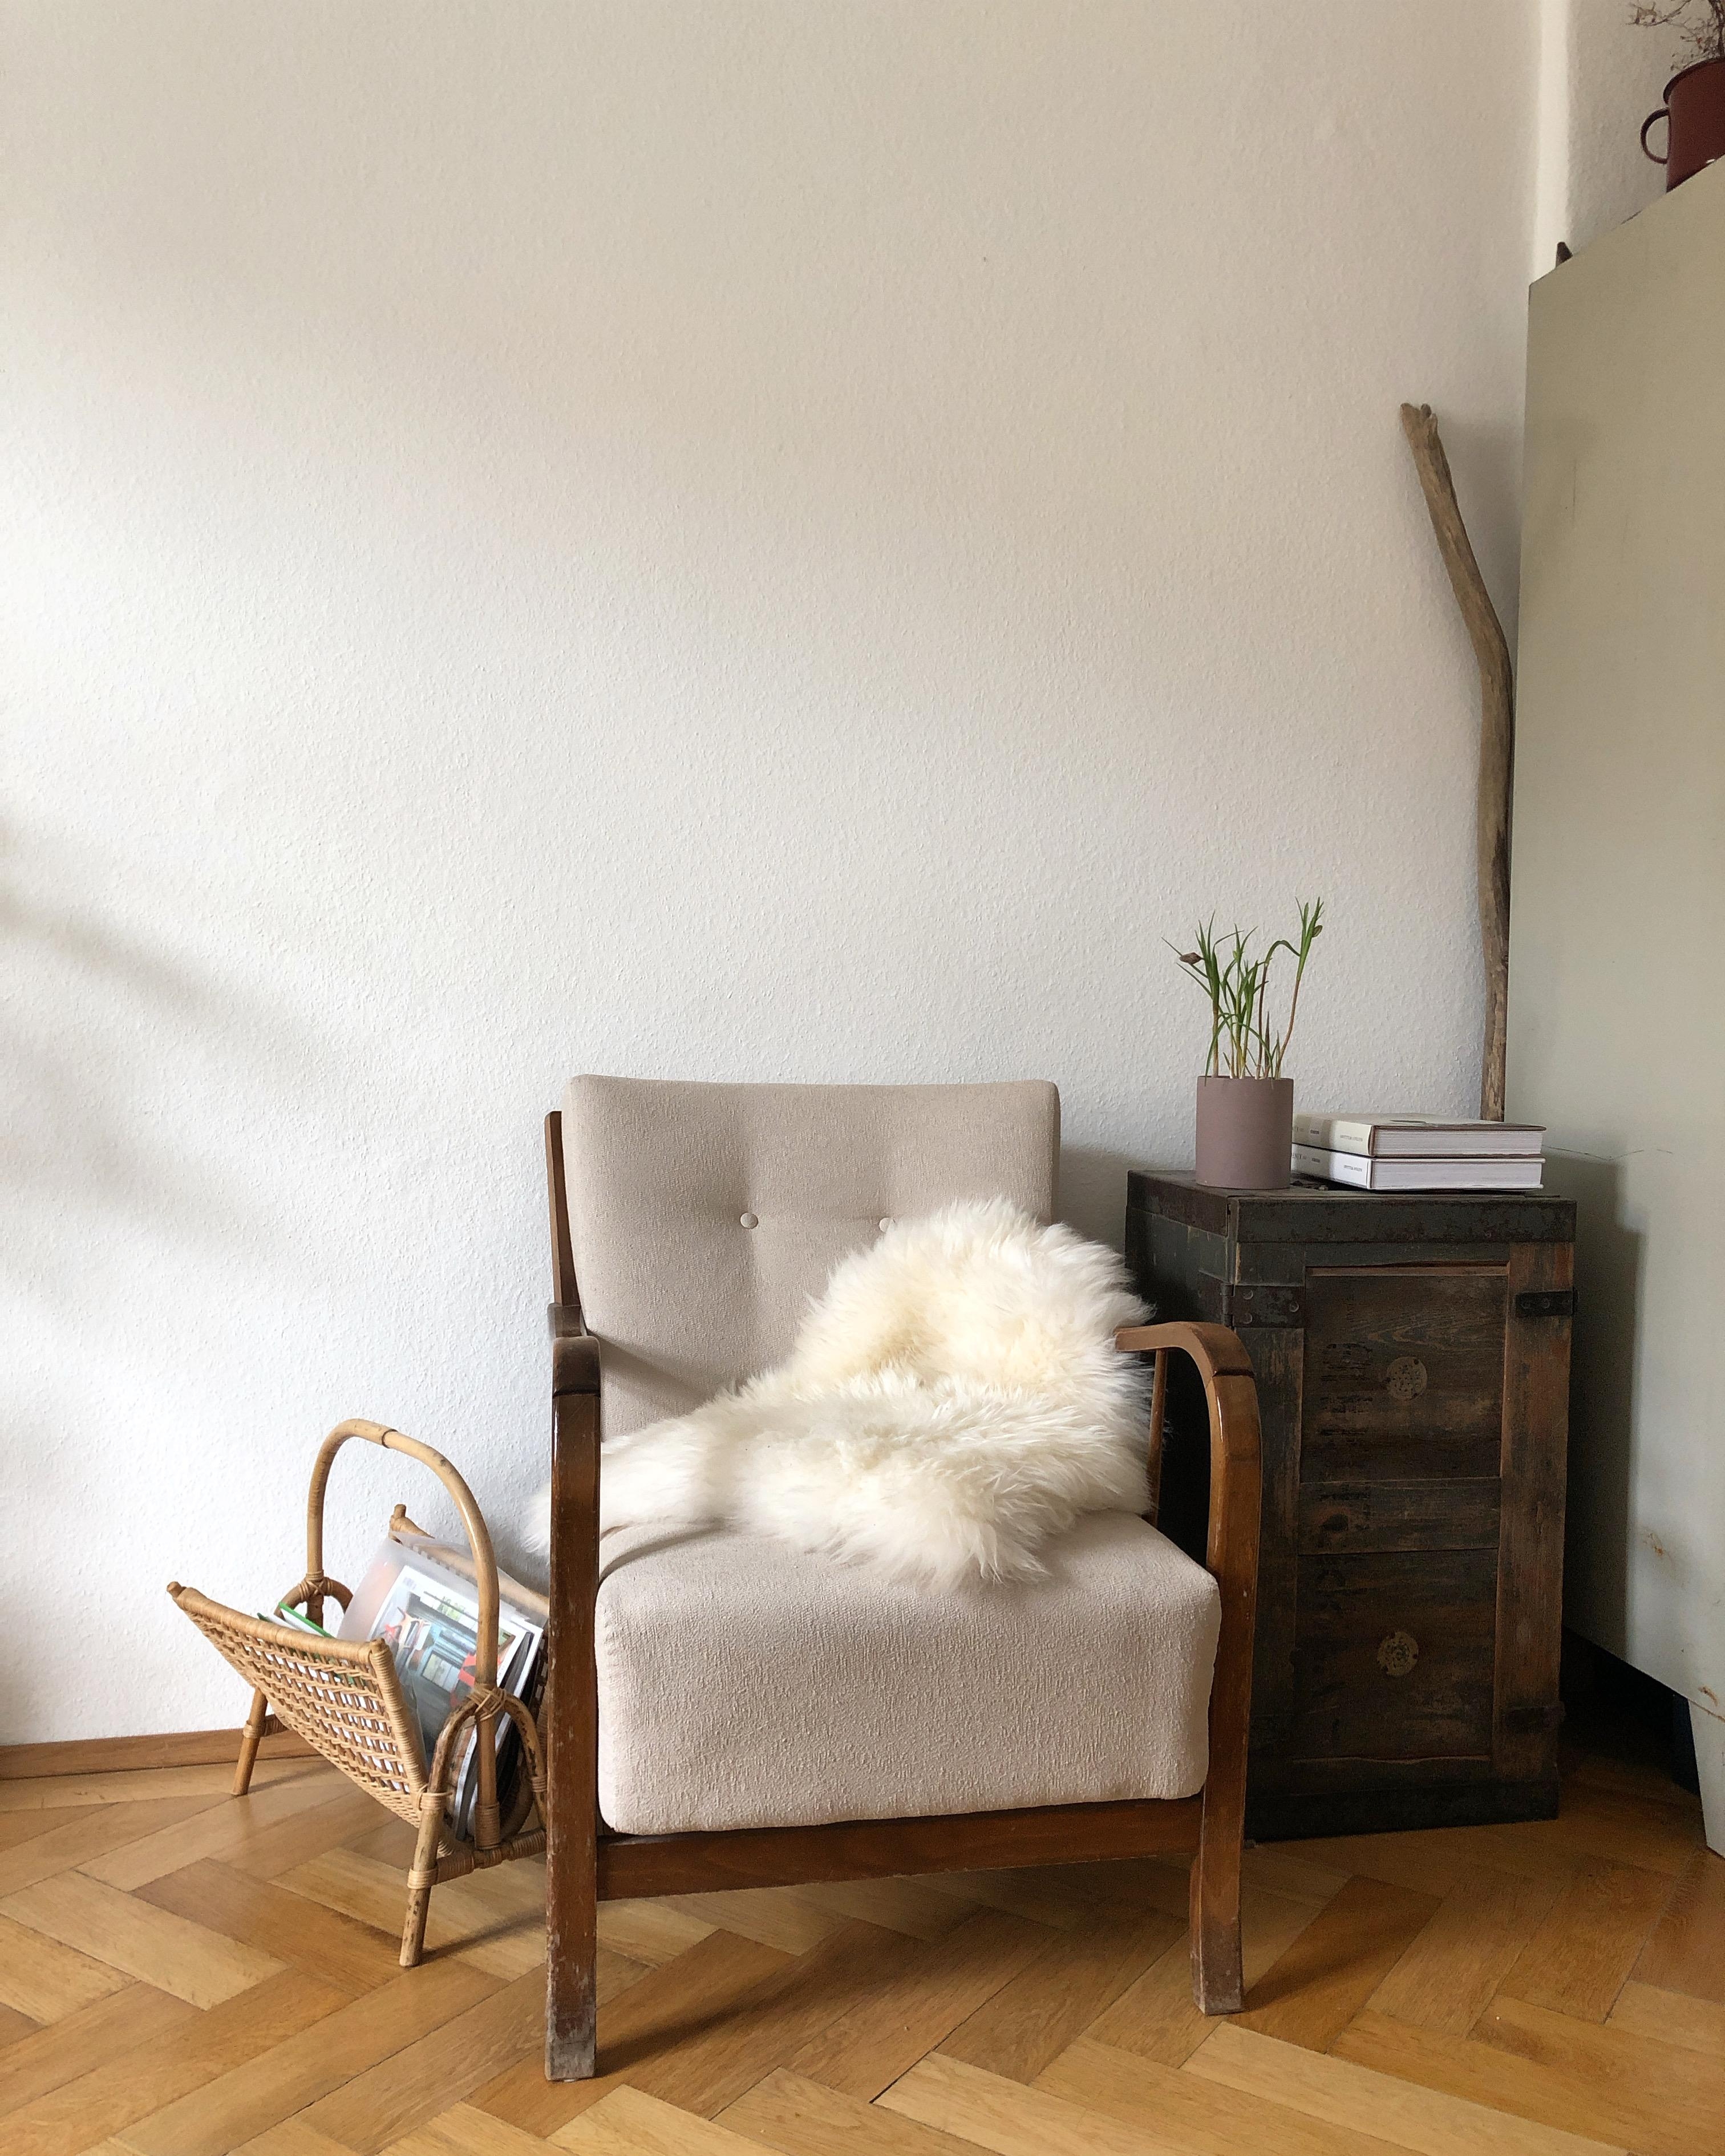 Huhu aus dem #wohnzimmer . #sessel #minimalistisch #altbau #gemütlich 